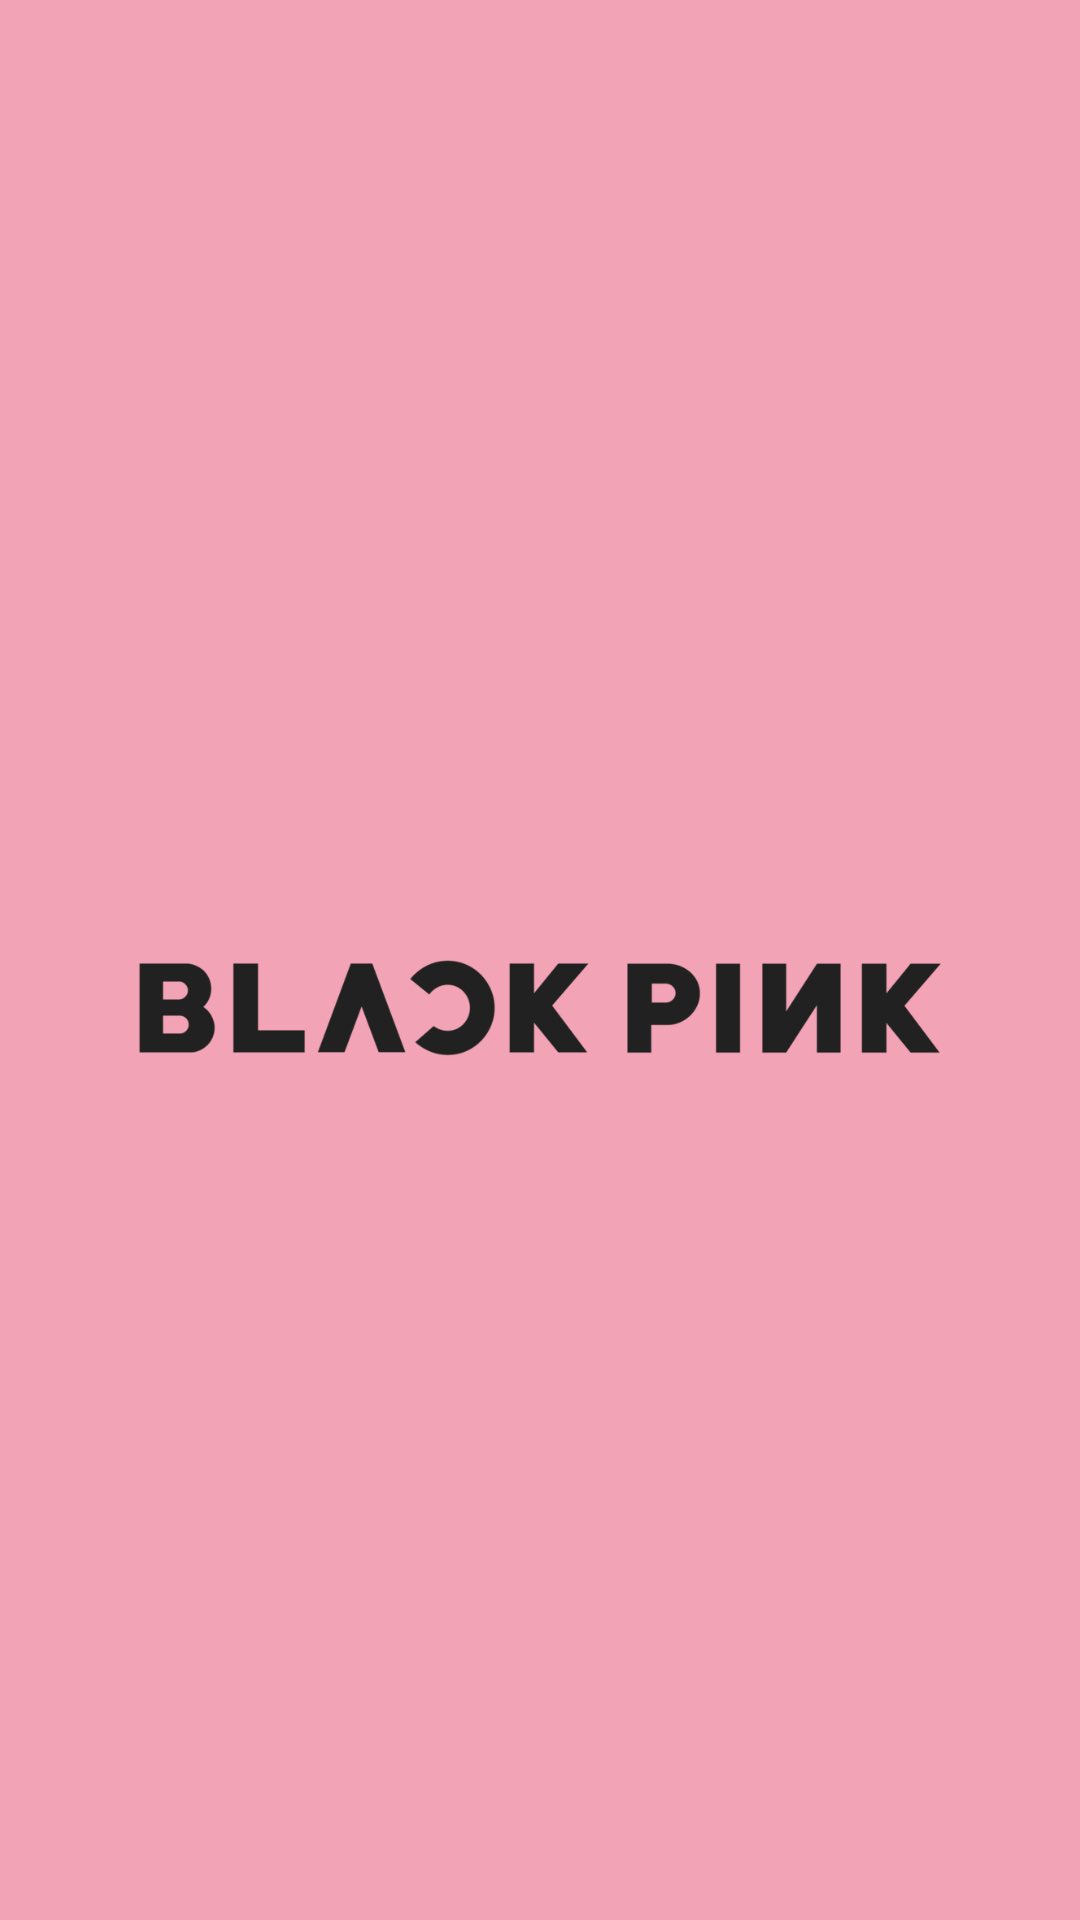 Blackpink ブラックピンクの高画質スマホ壁紙52枚 Iphone Androidに対応 エモい スマホ壁紙辞典